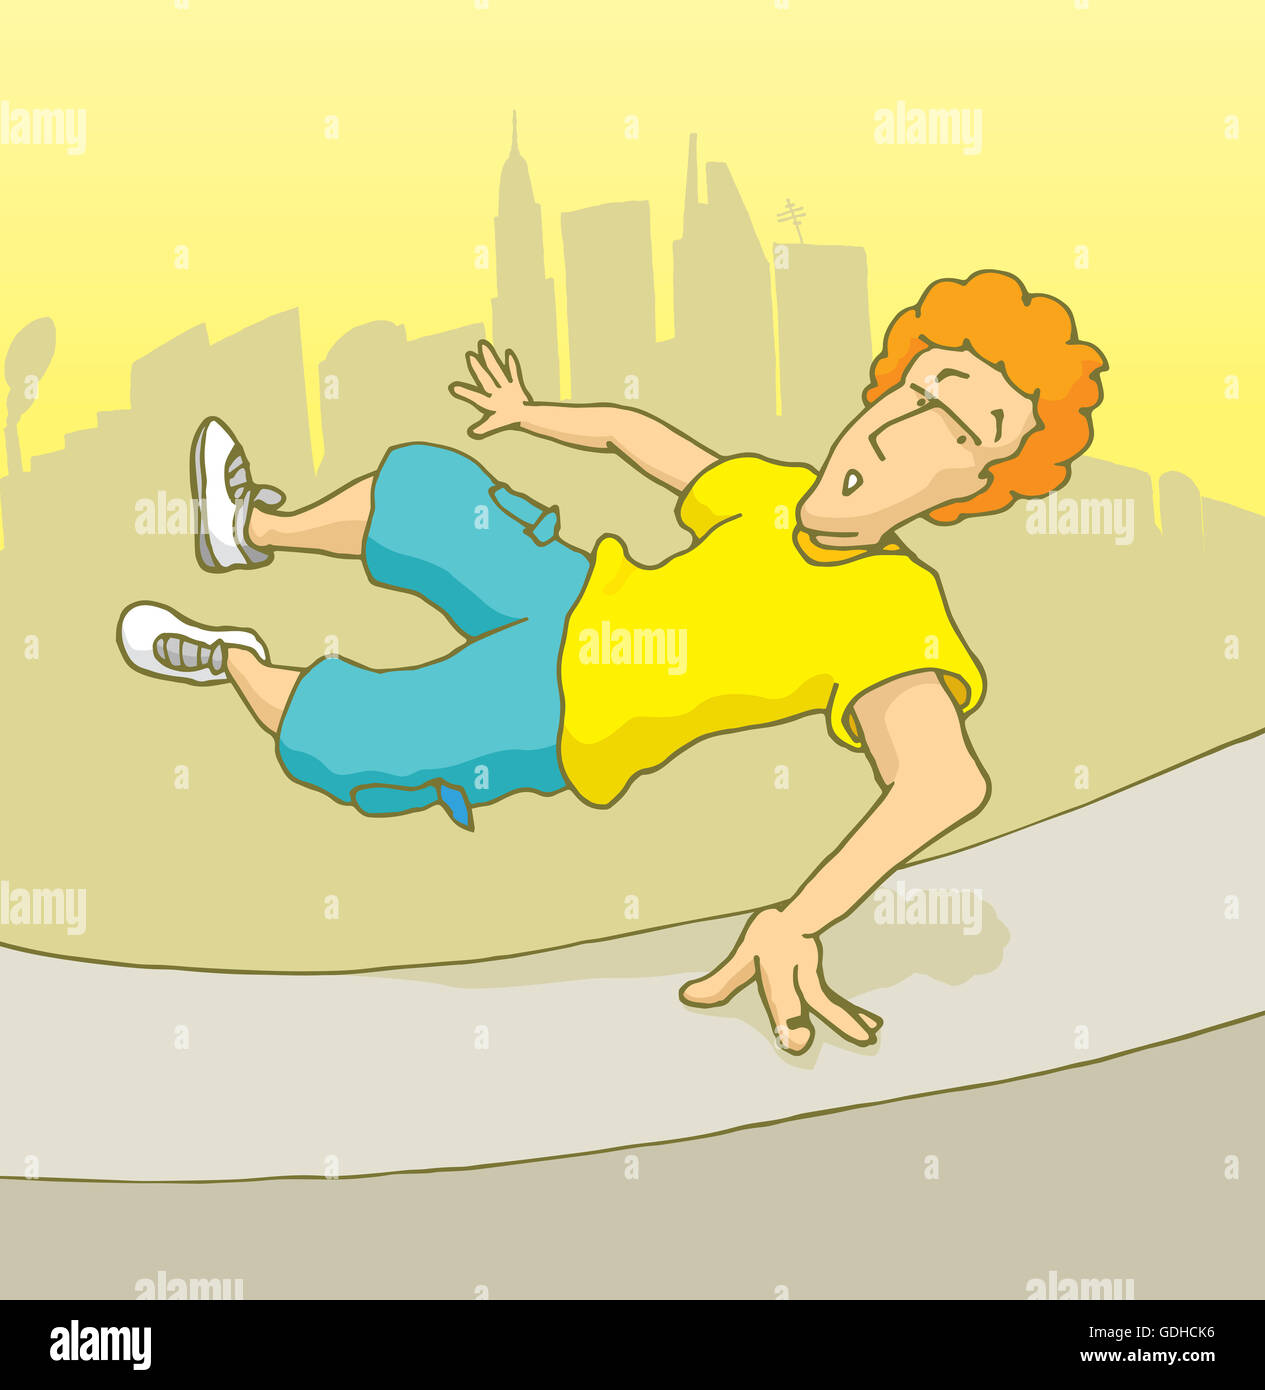 Cartoon illustrazione dell'uomo saltando su una parete facendo parkour freerunning o Foto Stock